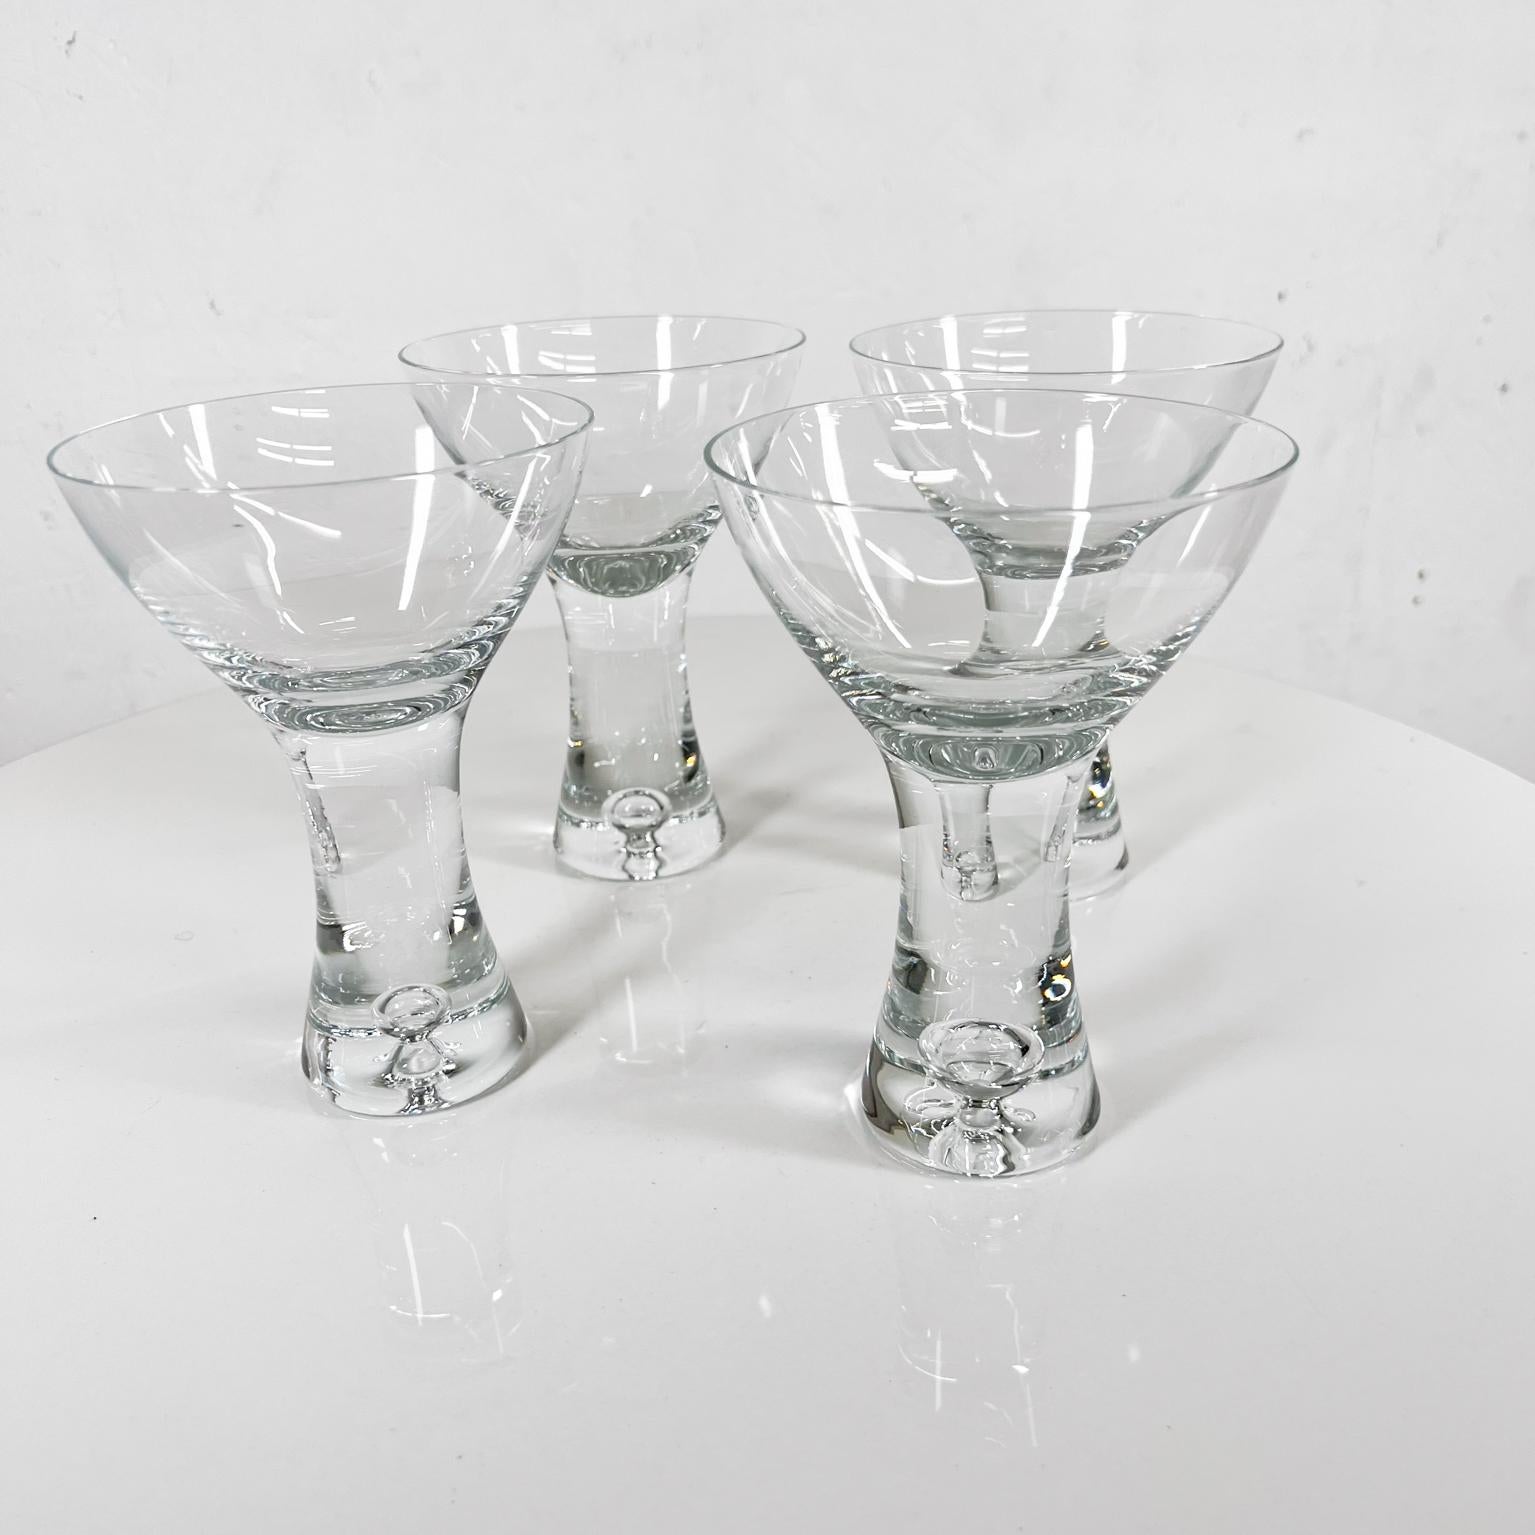 1952 Tapio Wirkkala Iittala Finland Set of 4 Martini Cocktail Glasses In Good Condition For Sale In Chula Vista, CA